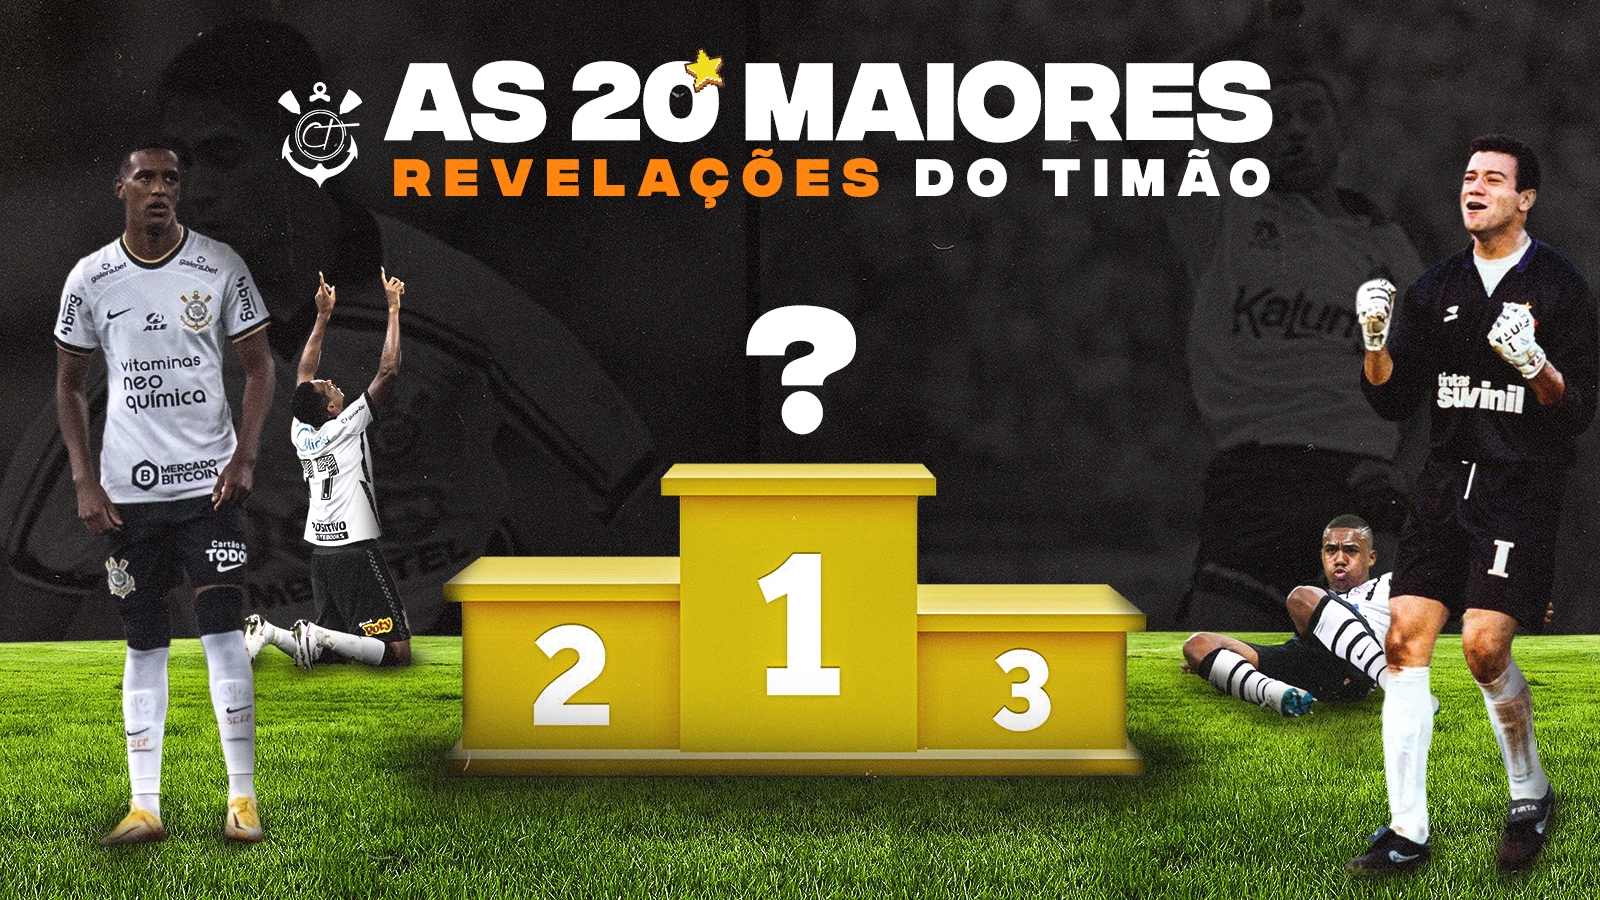 YouTimão on X: Esses são os próximos 7 jogos do Corinthians no